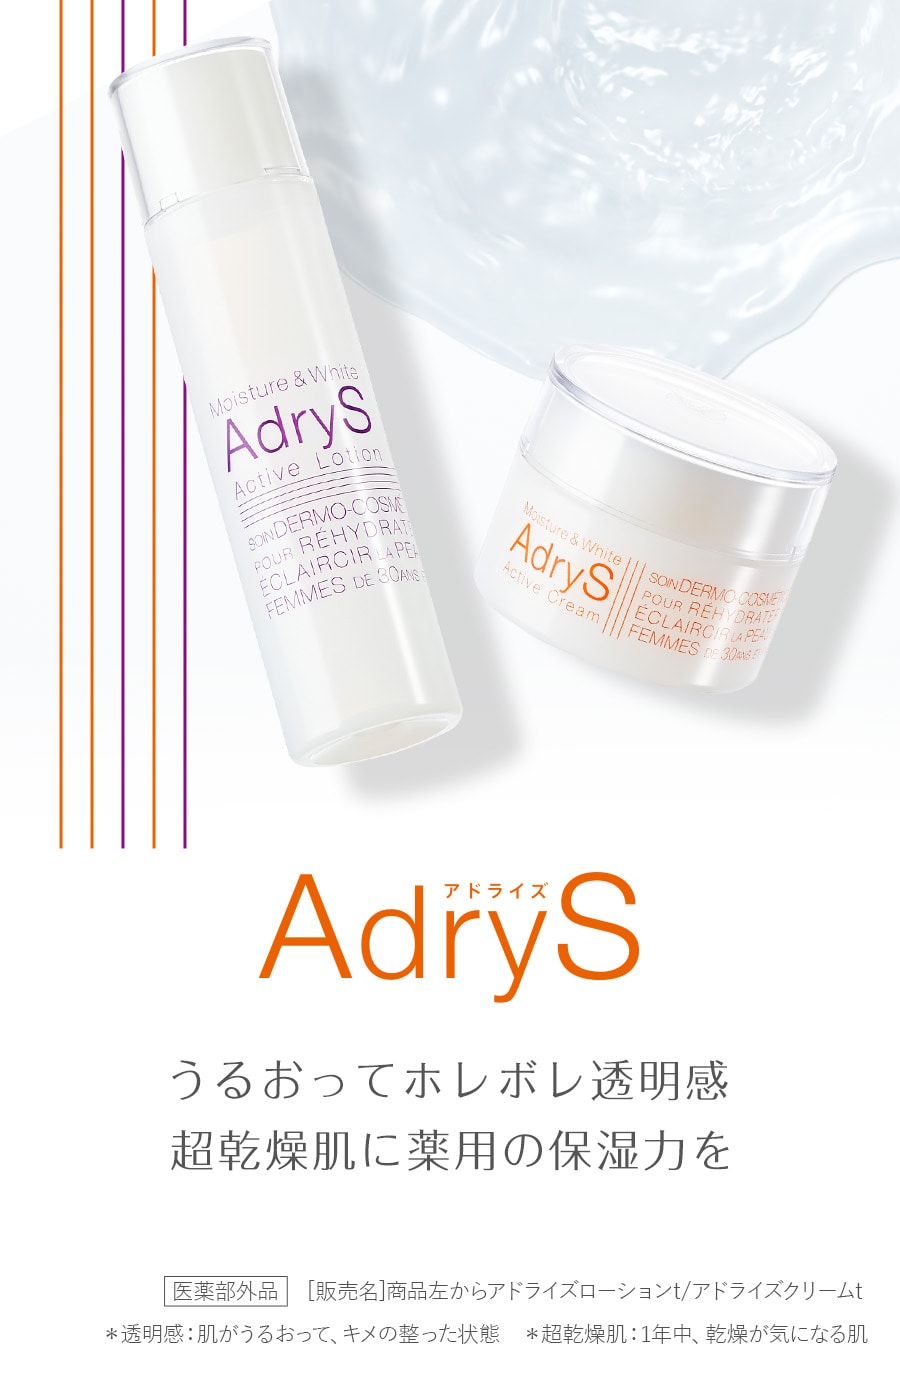 AdryS（アドライズ）- TAISHO BEAUTY ONLINE